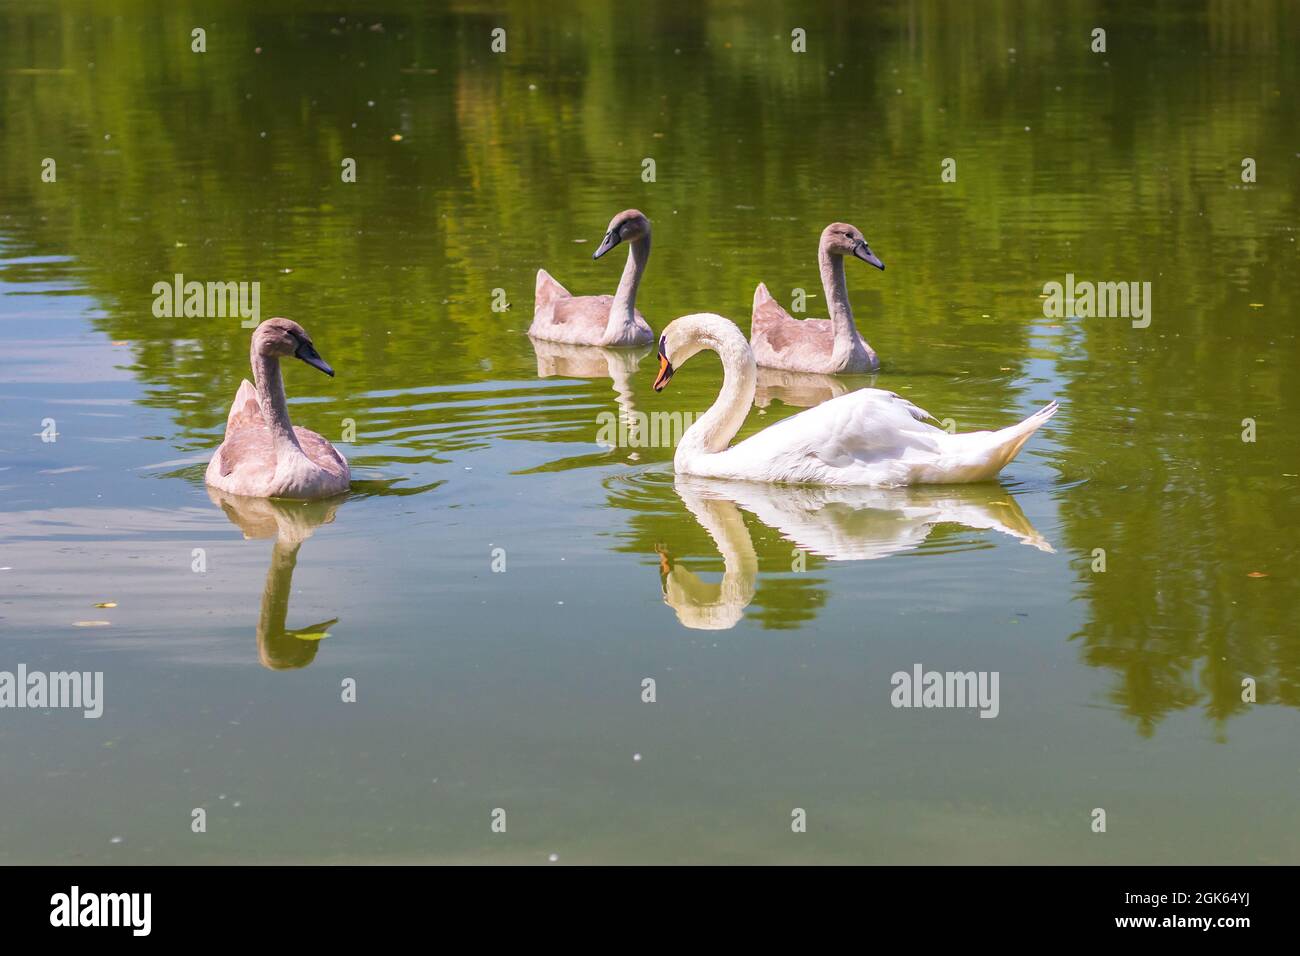 cygnes sur l'eau - famille de cygnes nageant dans l'étang Banque D'Images